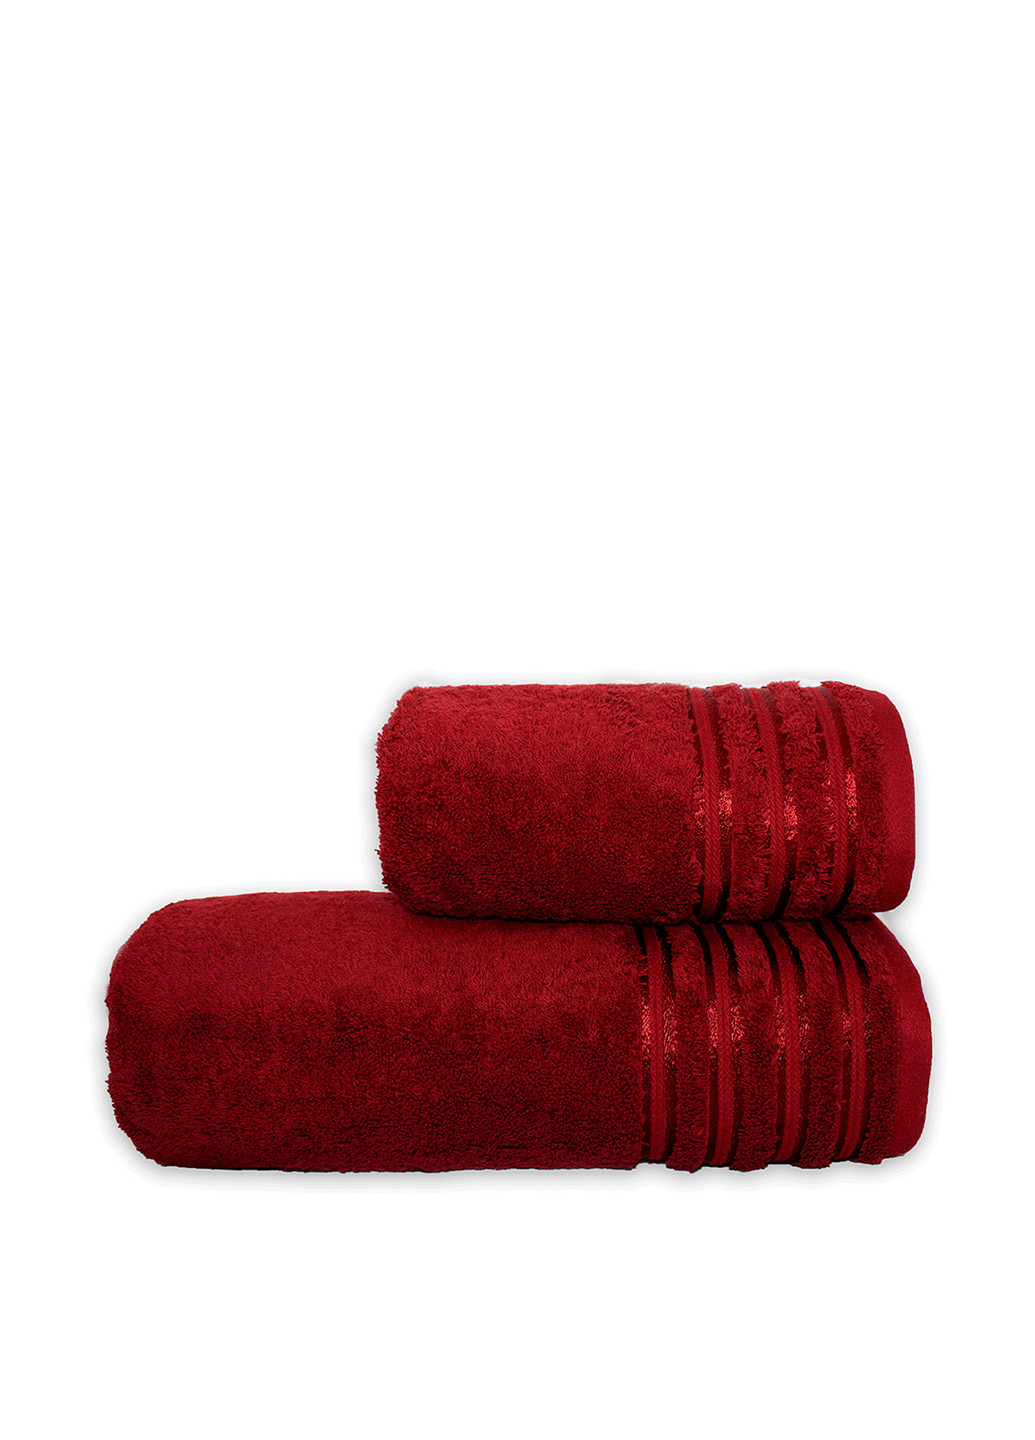 Vip Hotel Collection полотенце, 76х142 см однотонный бордовый производство - Турция